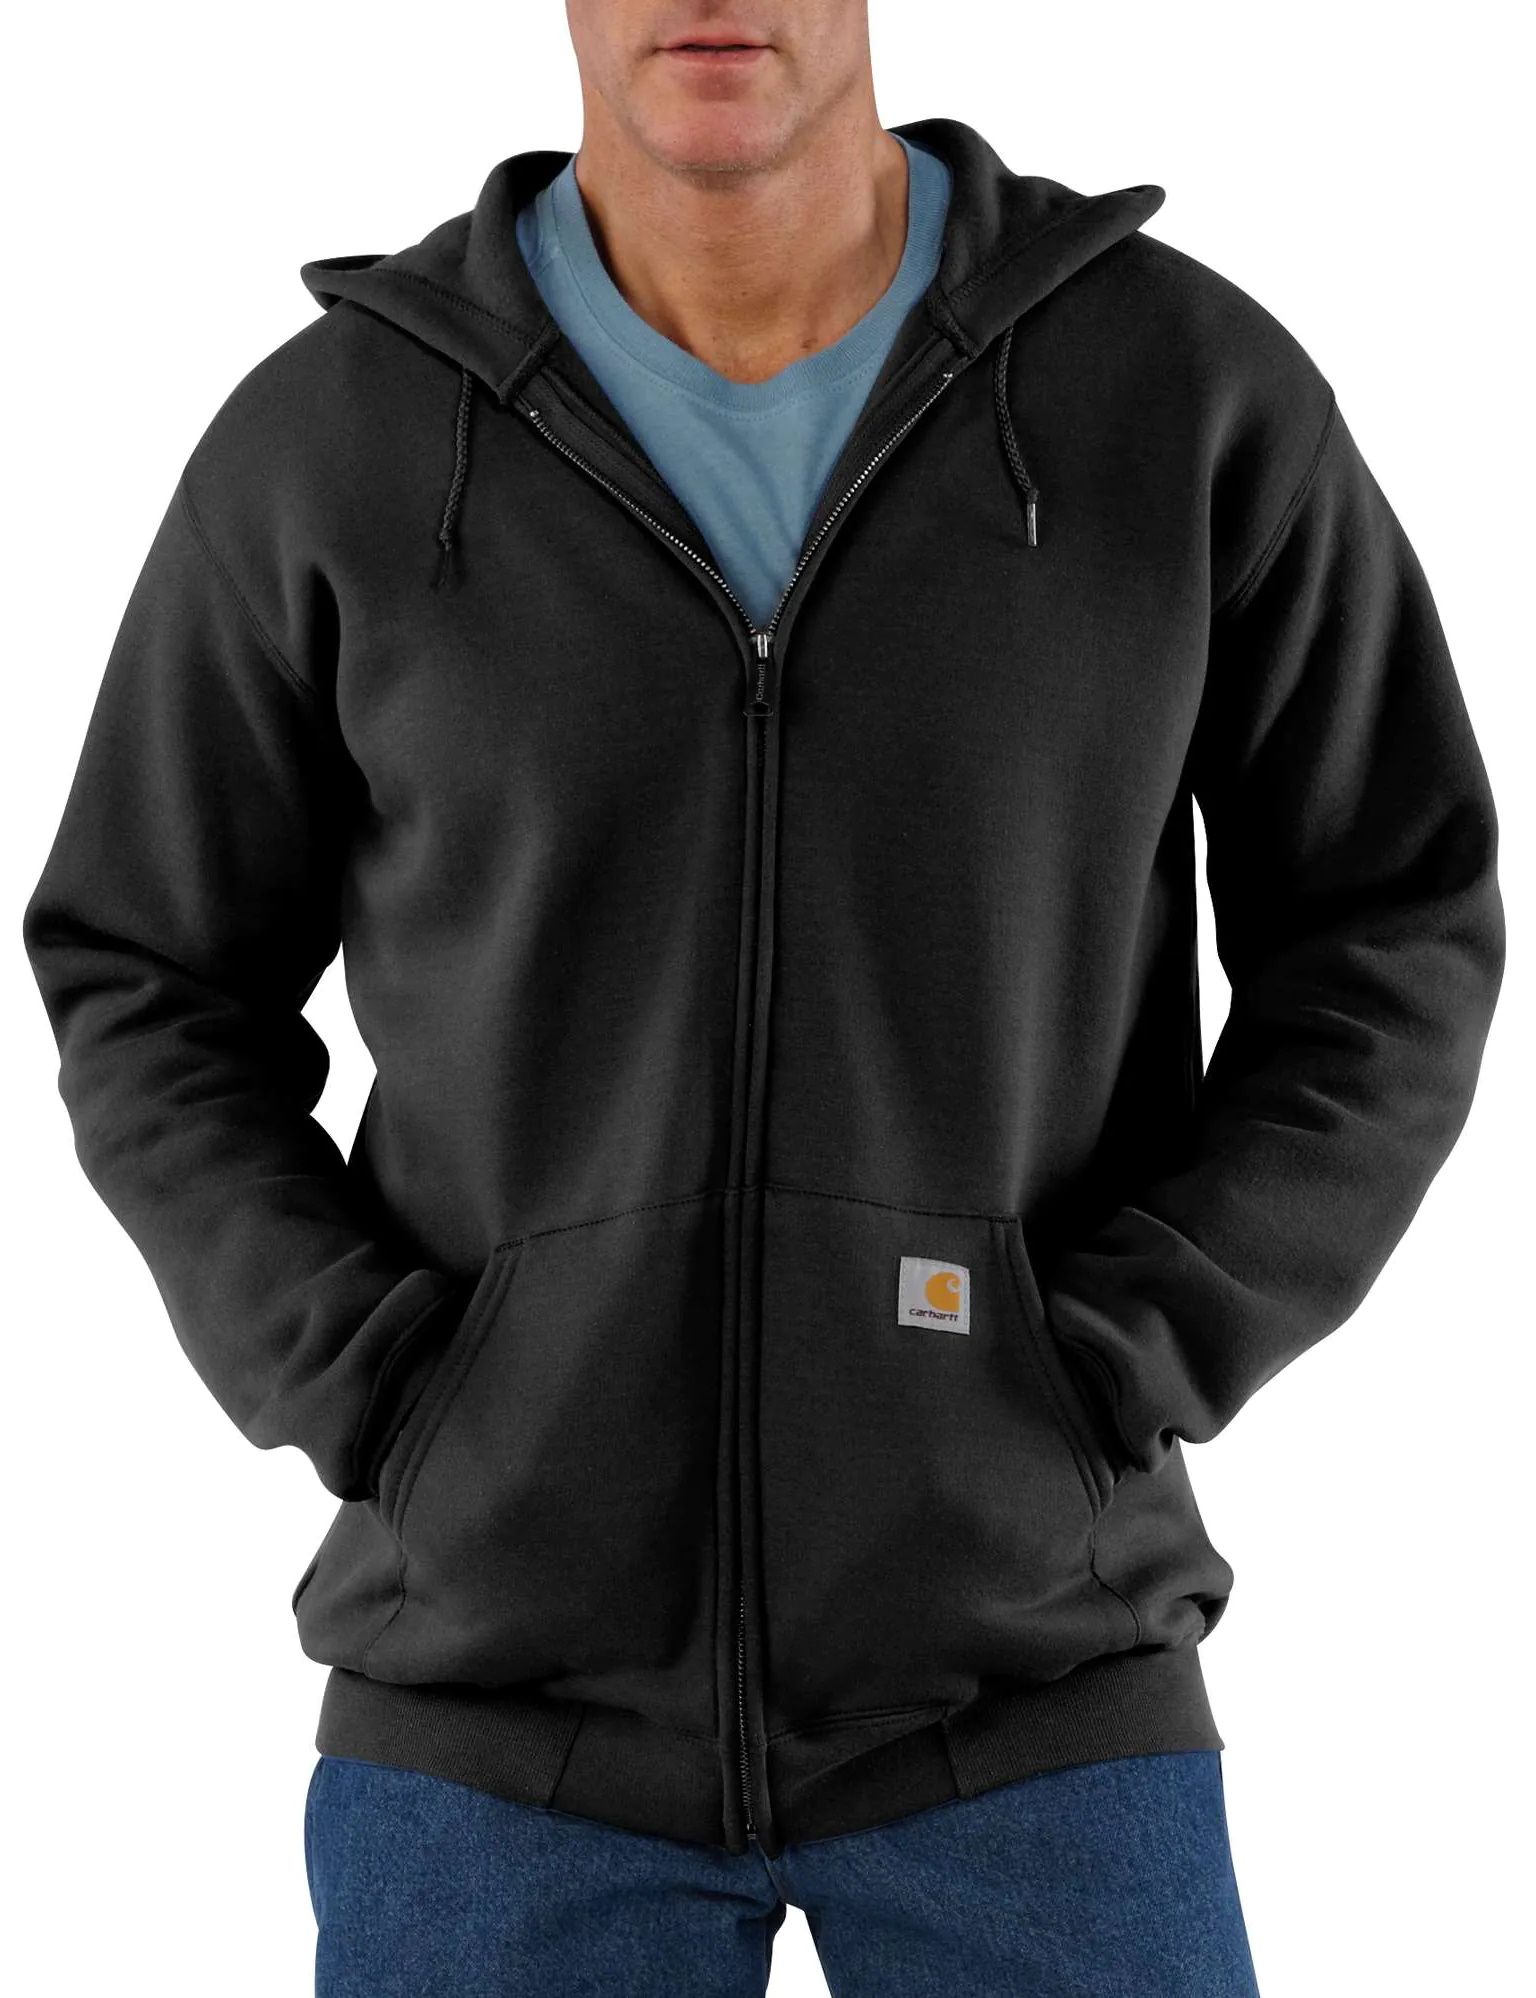 Carhartt Men's Zip Hooded Sweatshirt Black